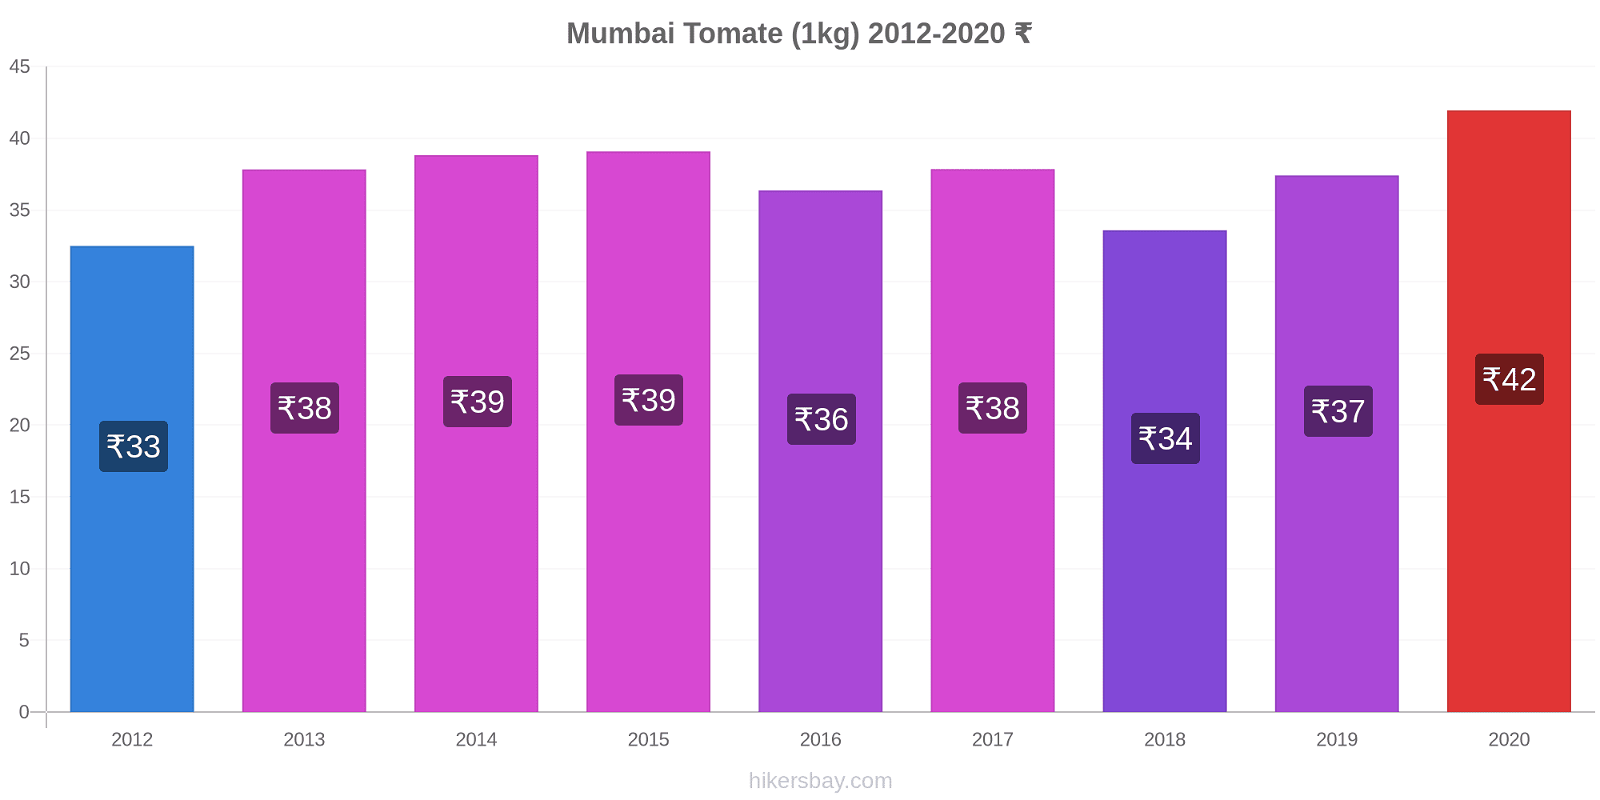 Mumbai modificări de preț Tomate (1kg) hikersbay.com